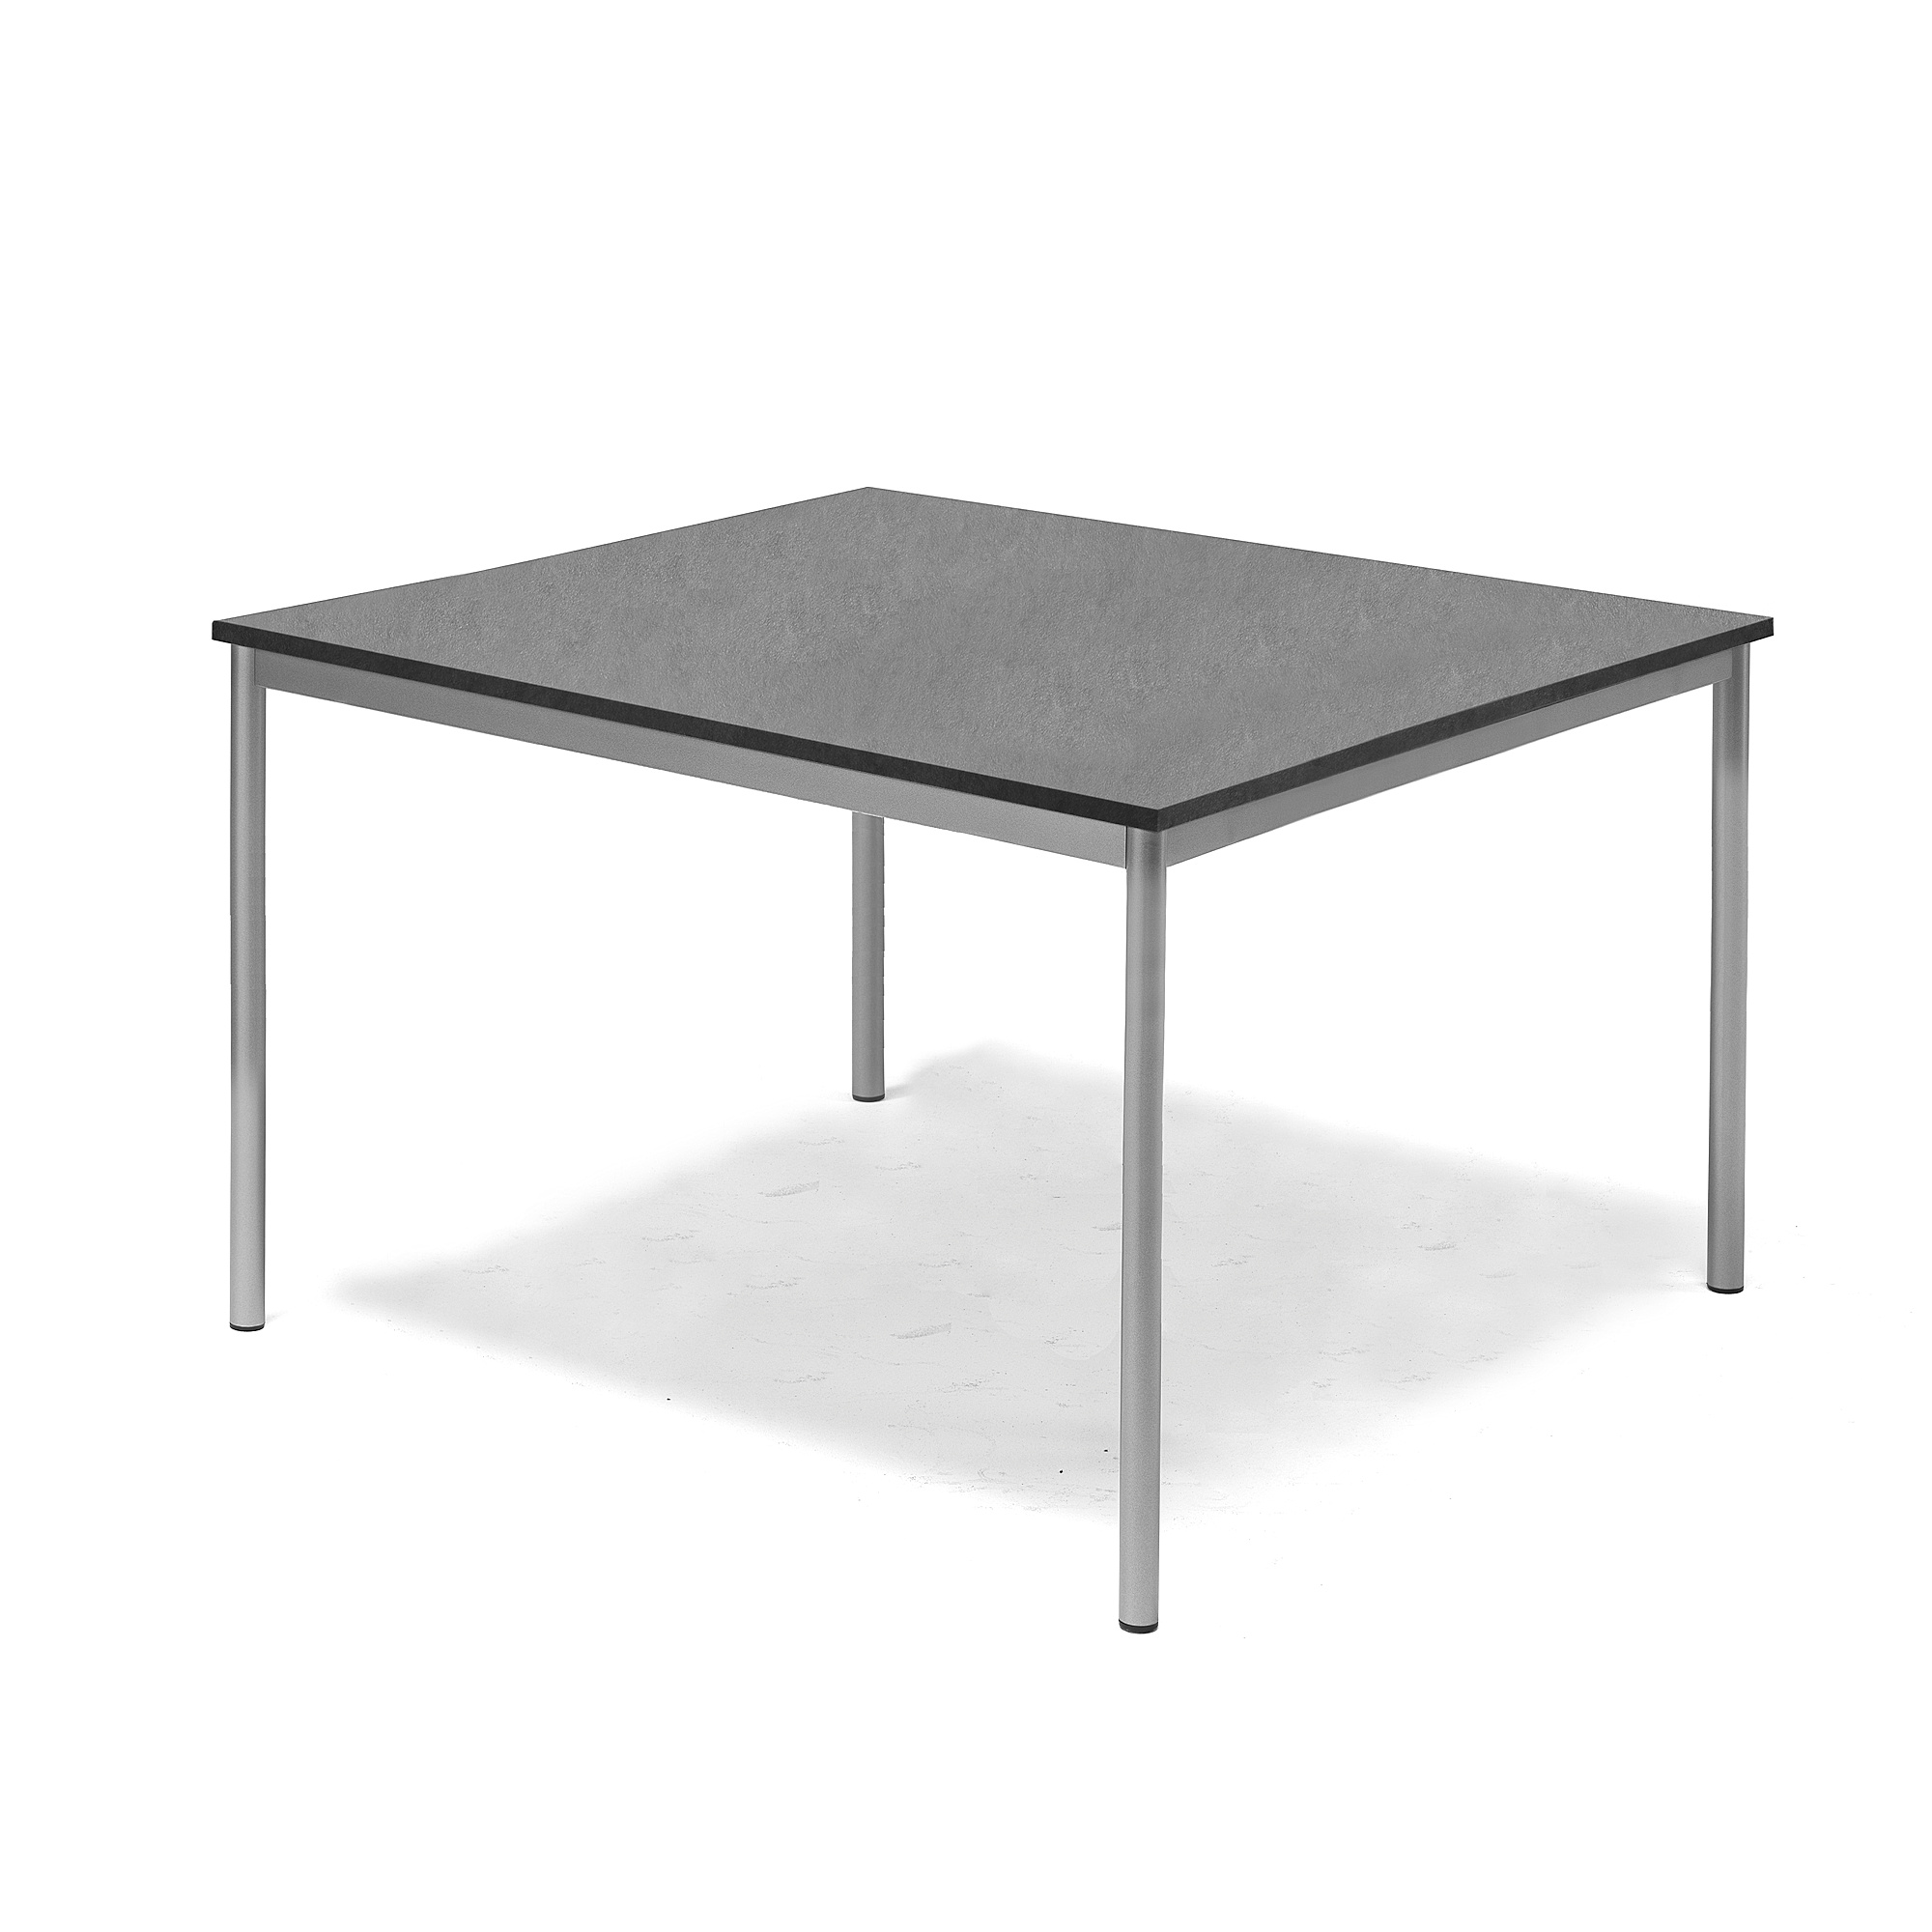 Stôl SONITUS, 1200x1200x720 mm, linoleum - tmavošedá, strieborná